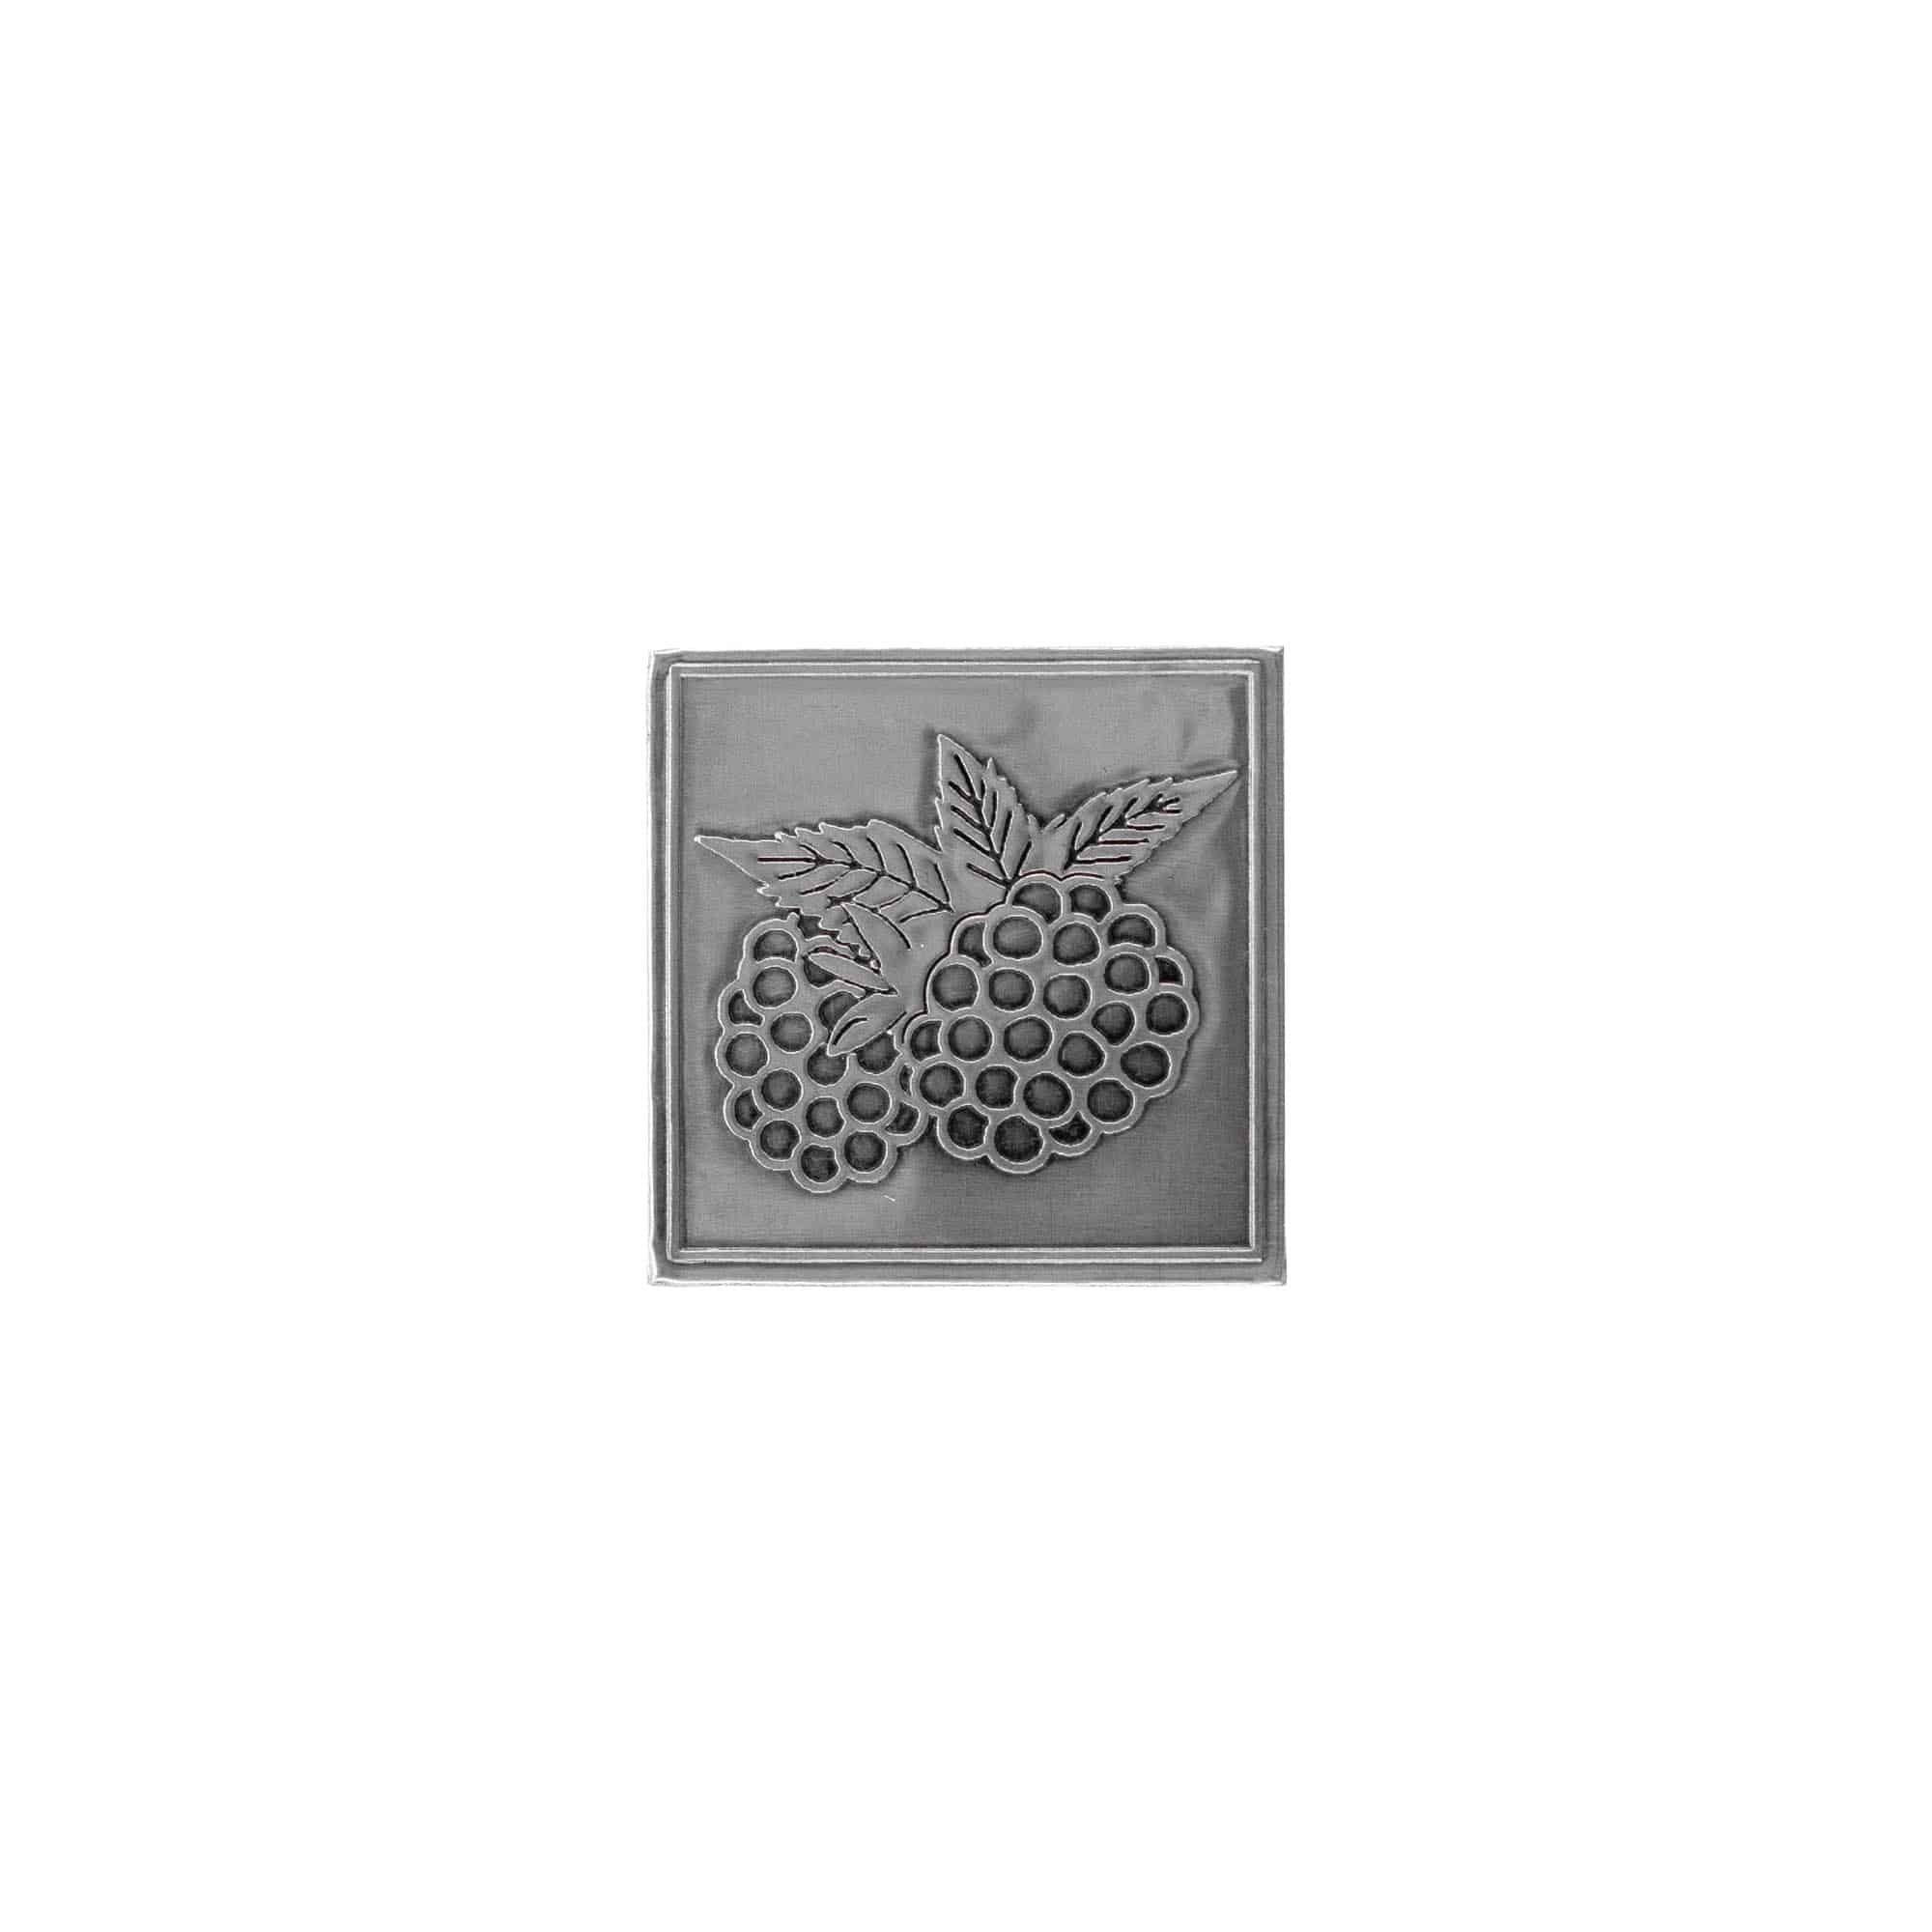 Cínový štítek 'Ostružina', čtvercový, kov, stříbrný